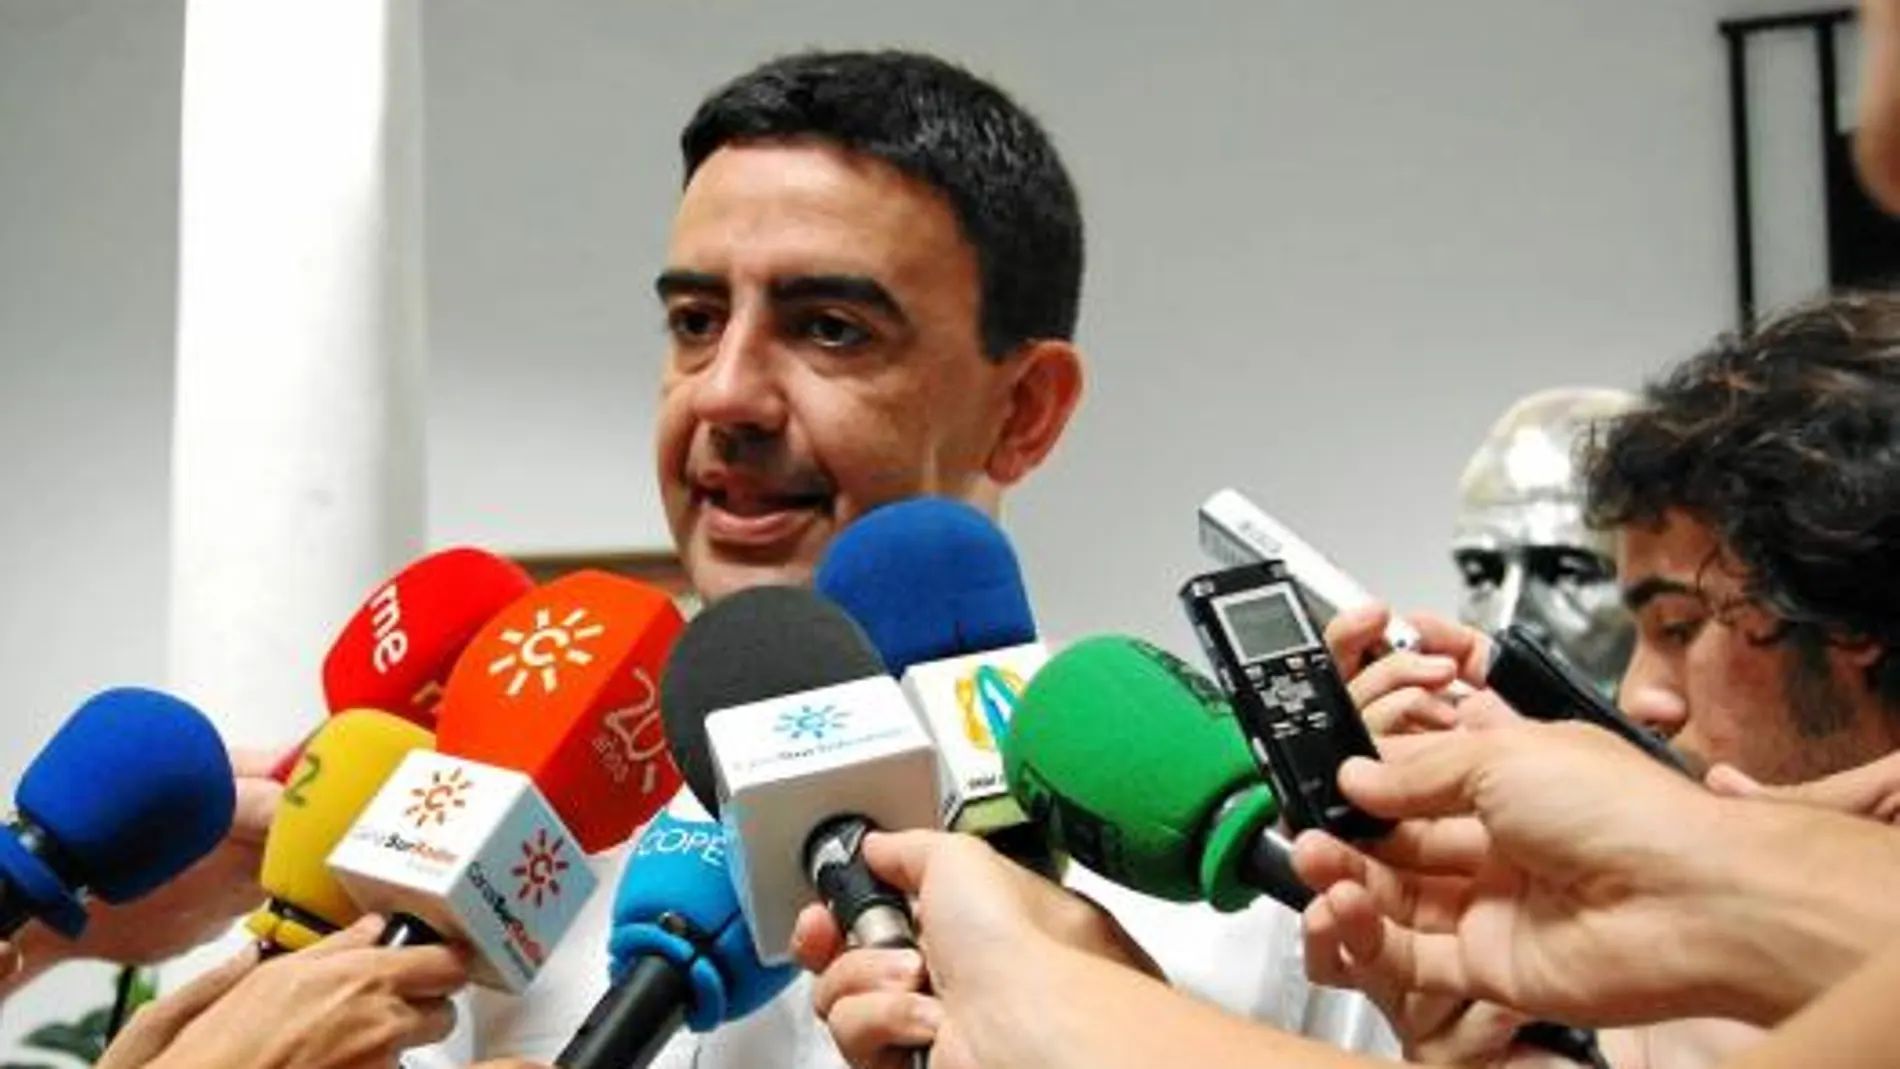 El portavoz del Grupo Parlamentario Socialista, Mario Jiménez, rodeado ayer de medios de comunicación